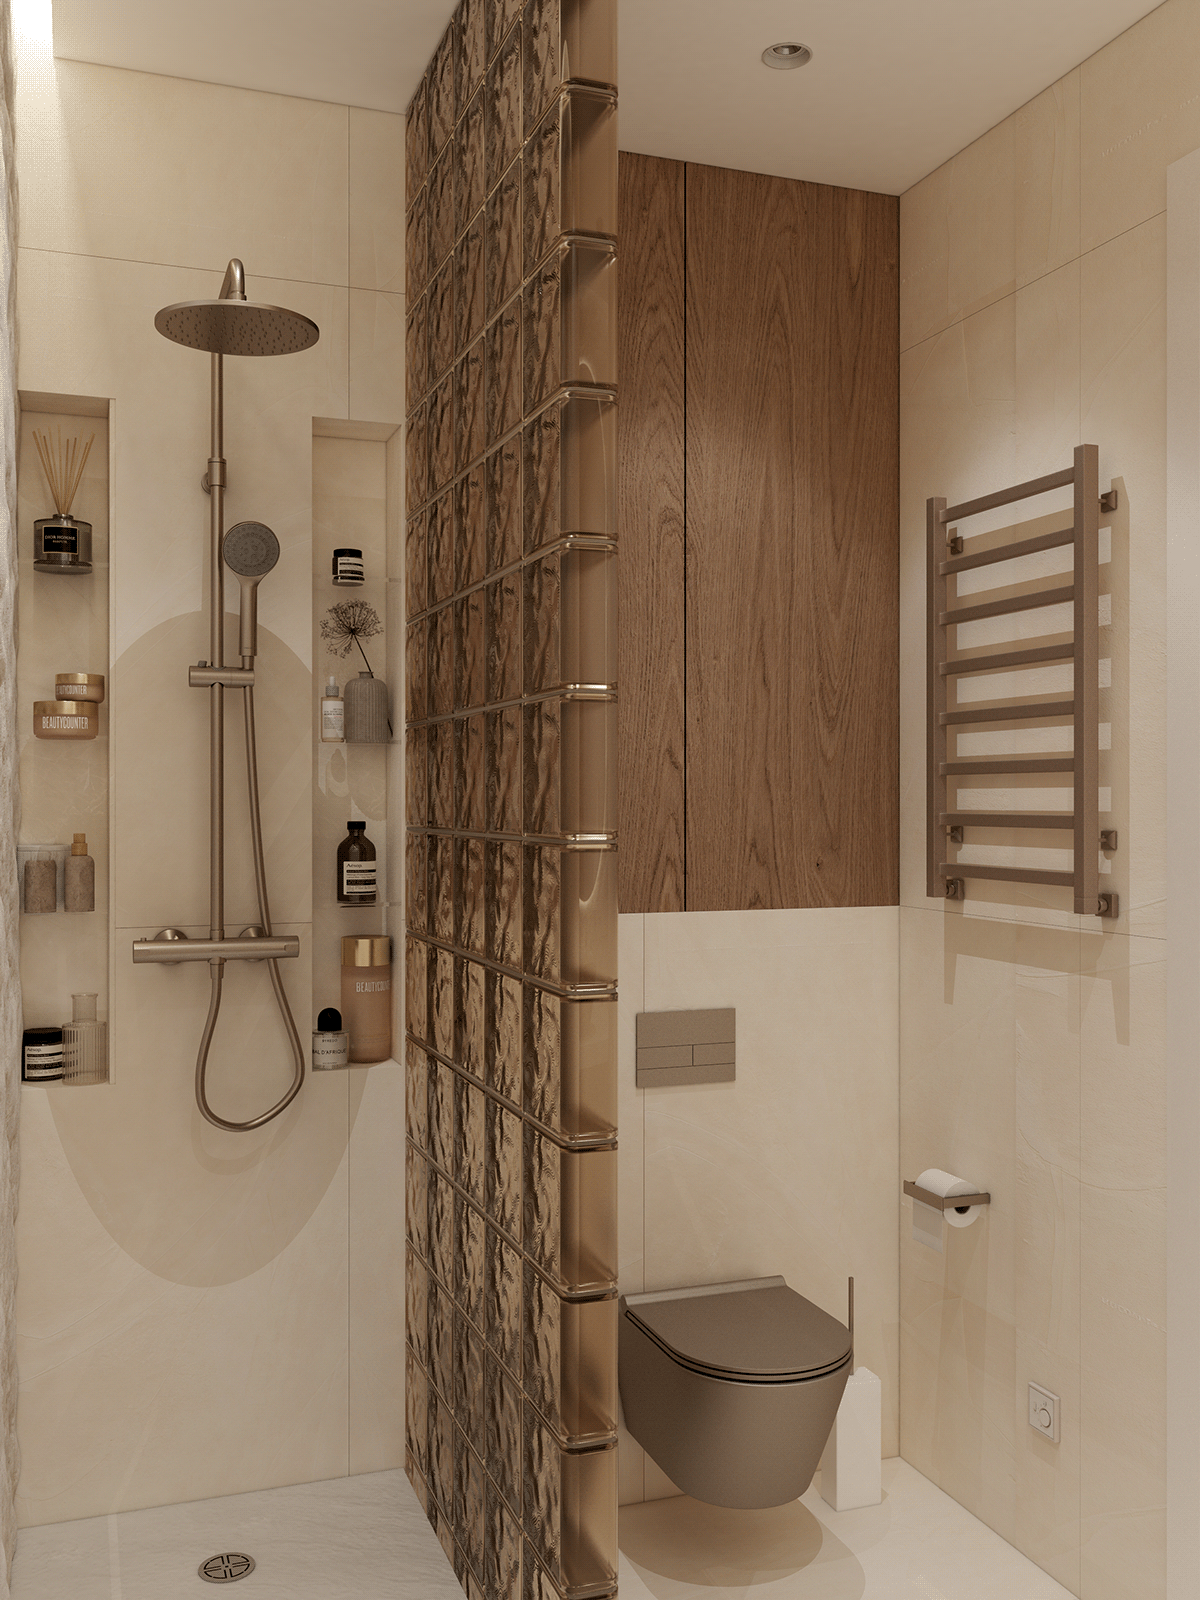 bathroom architecture Render visualization 3ds max интерьер дизайн интерьера ванная визуализация interioir design